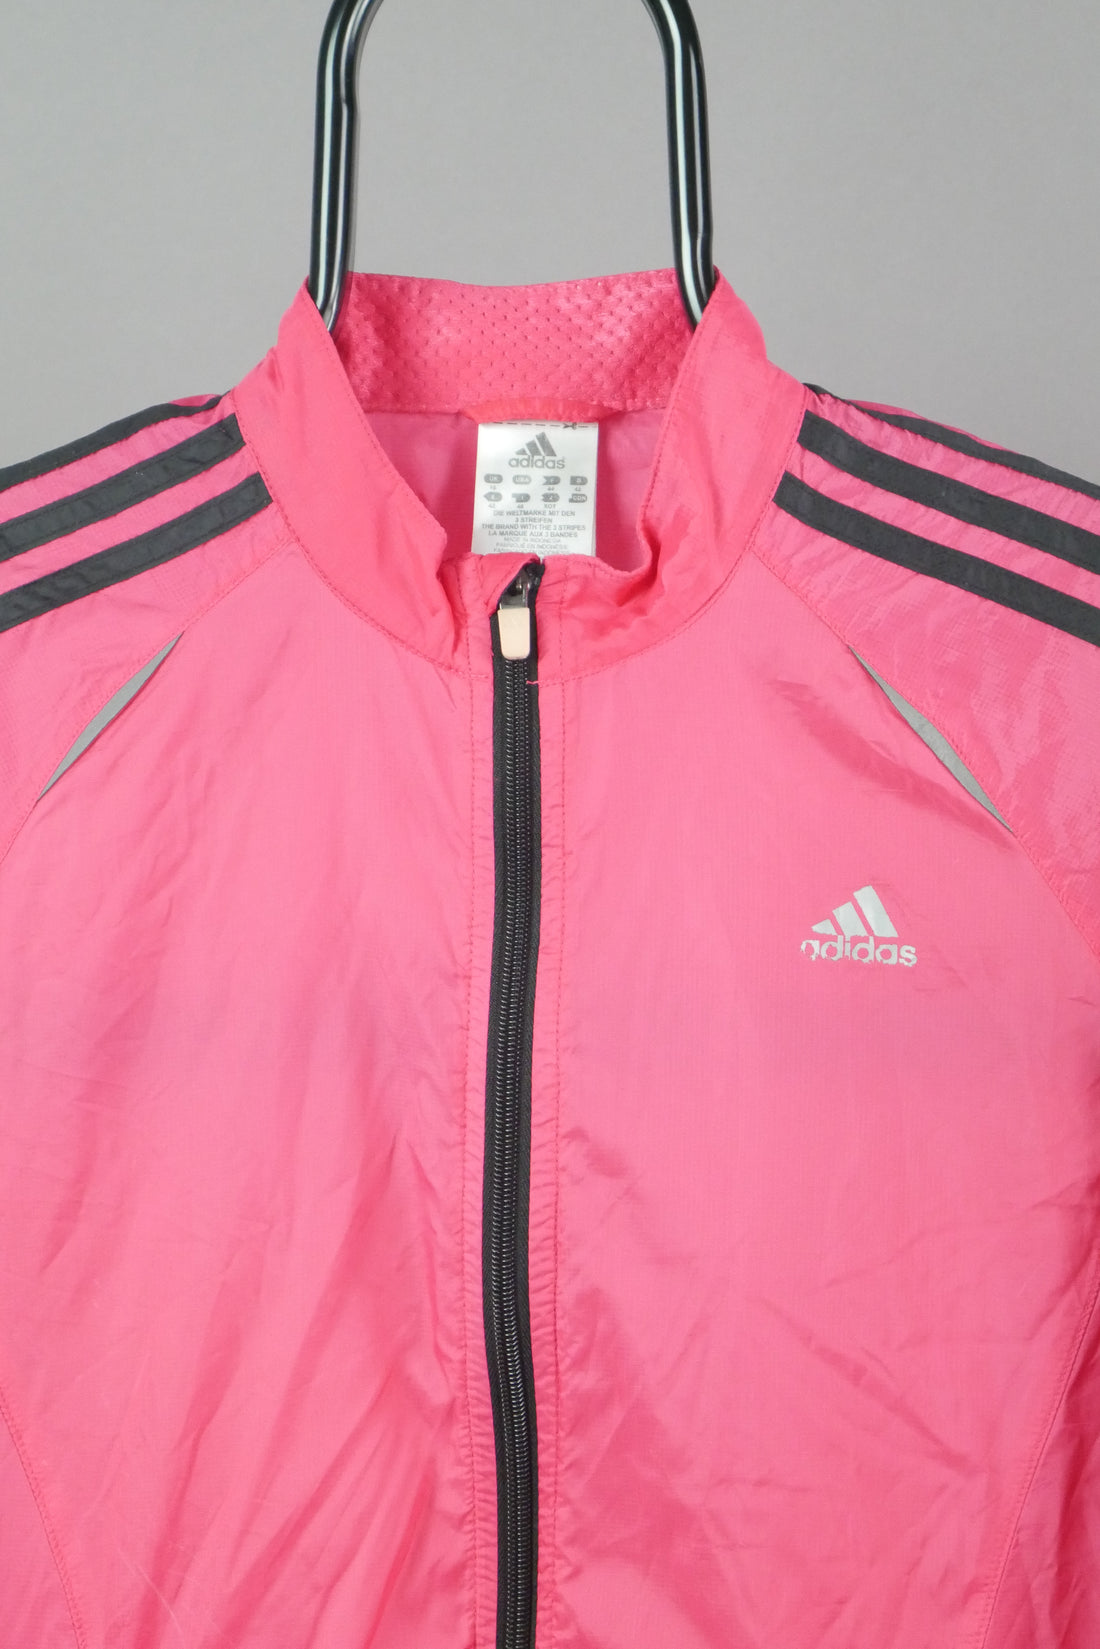 The Adidas Running Jacket (UK16)